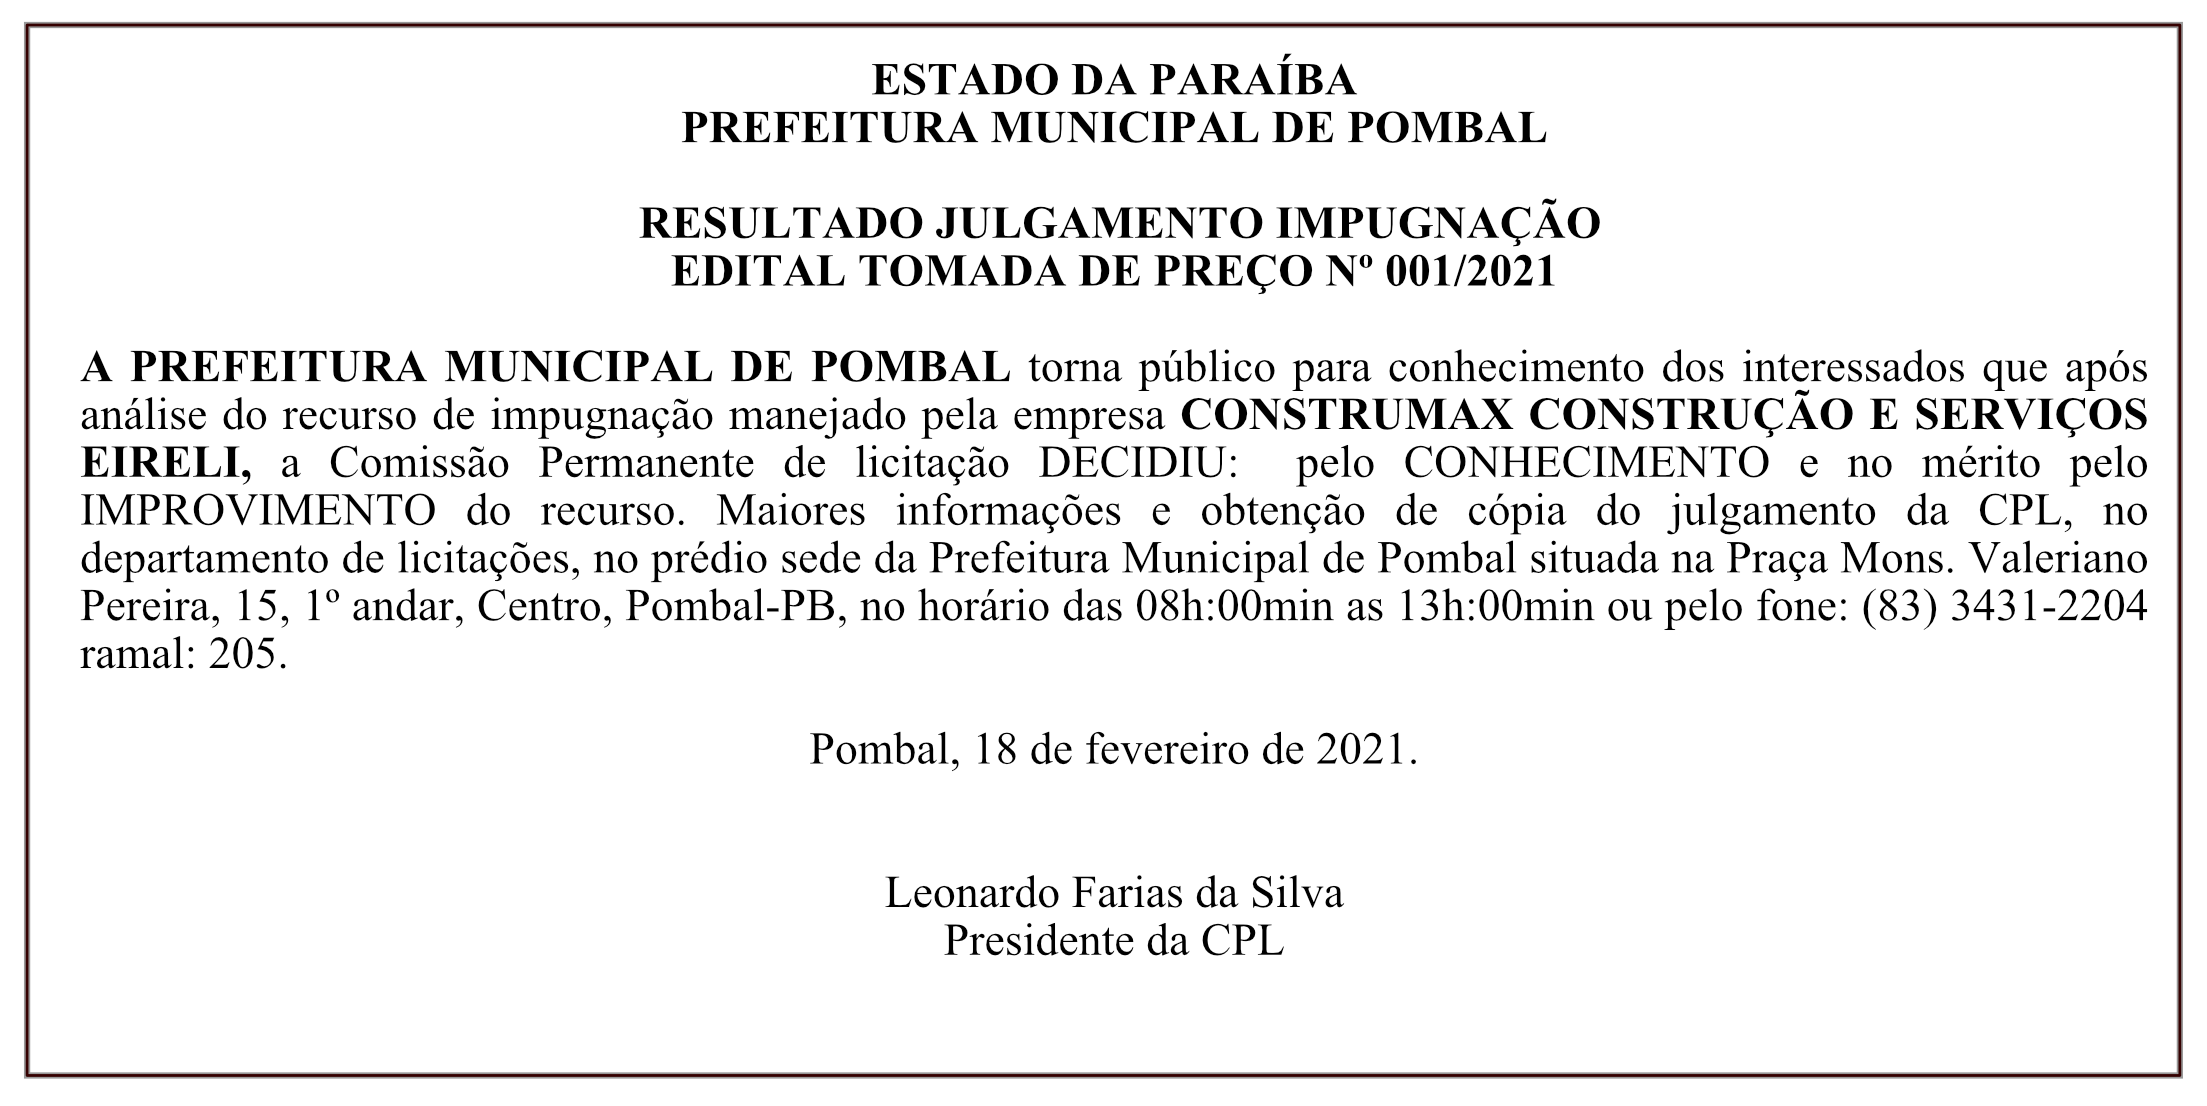 PREFEITURA MUNICIPAL DE POMBAL – RESULTADO JULGAMENTO IMPUGNAÇÃO – EDITAL TOMADA DE PREÇO Nº 001/2021